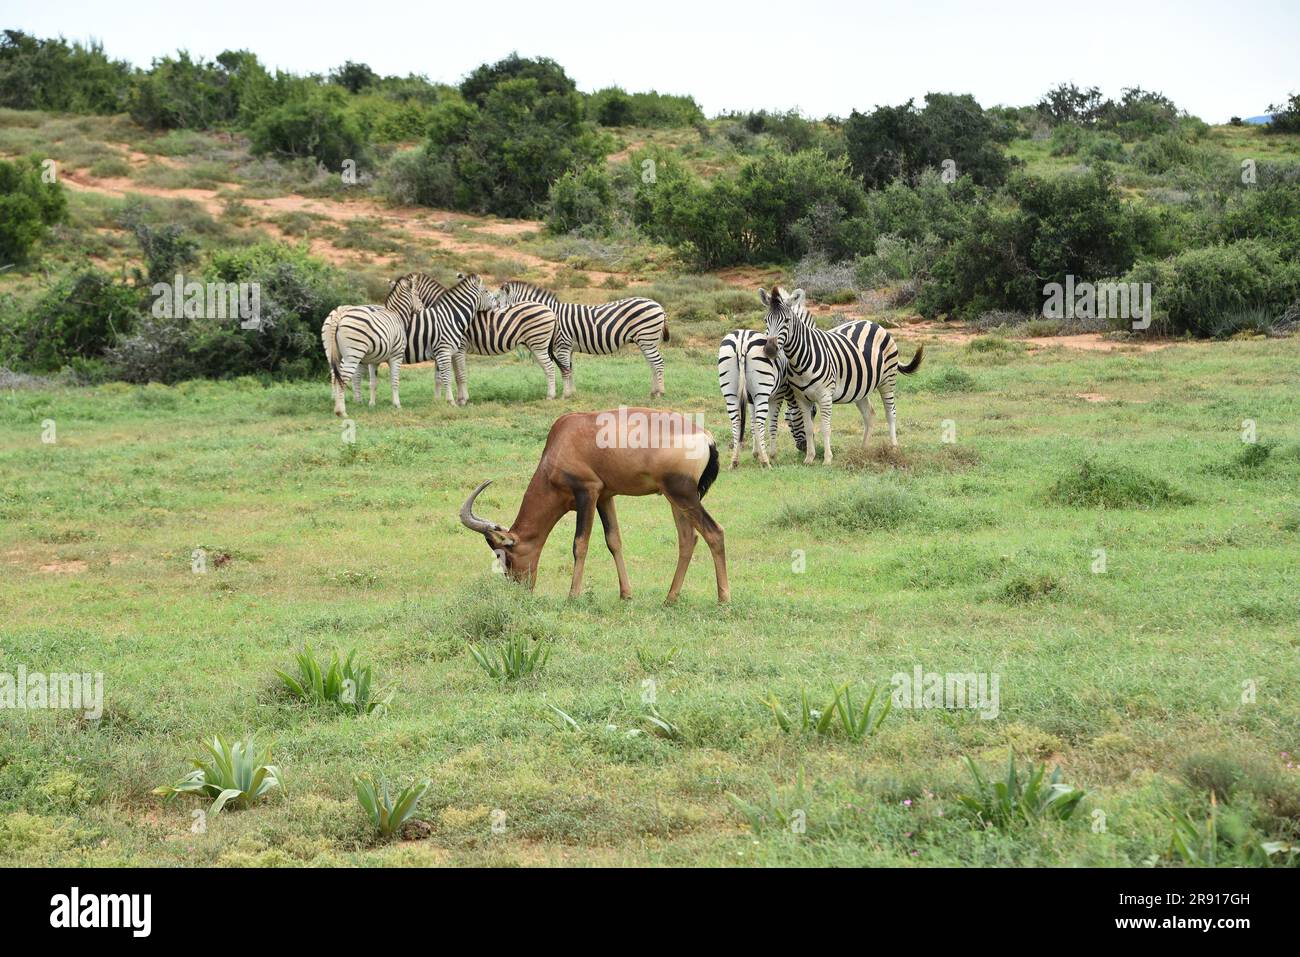 Afrika - Großformat Nahaufnahme einer wilden Hartebeest-Antilope, die zwischen einer Gruppe von Zebras grast. Stockfoto